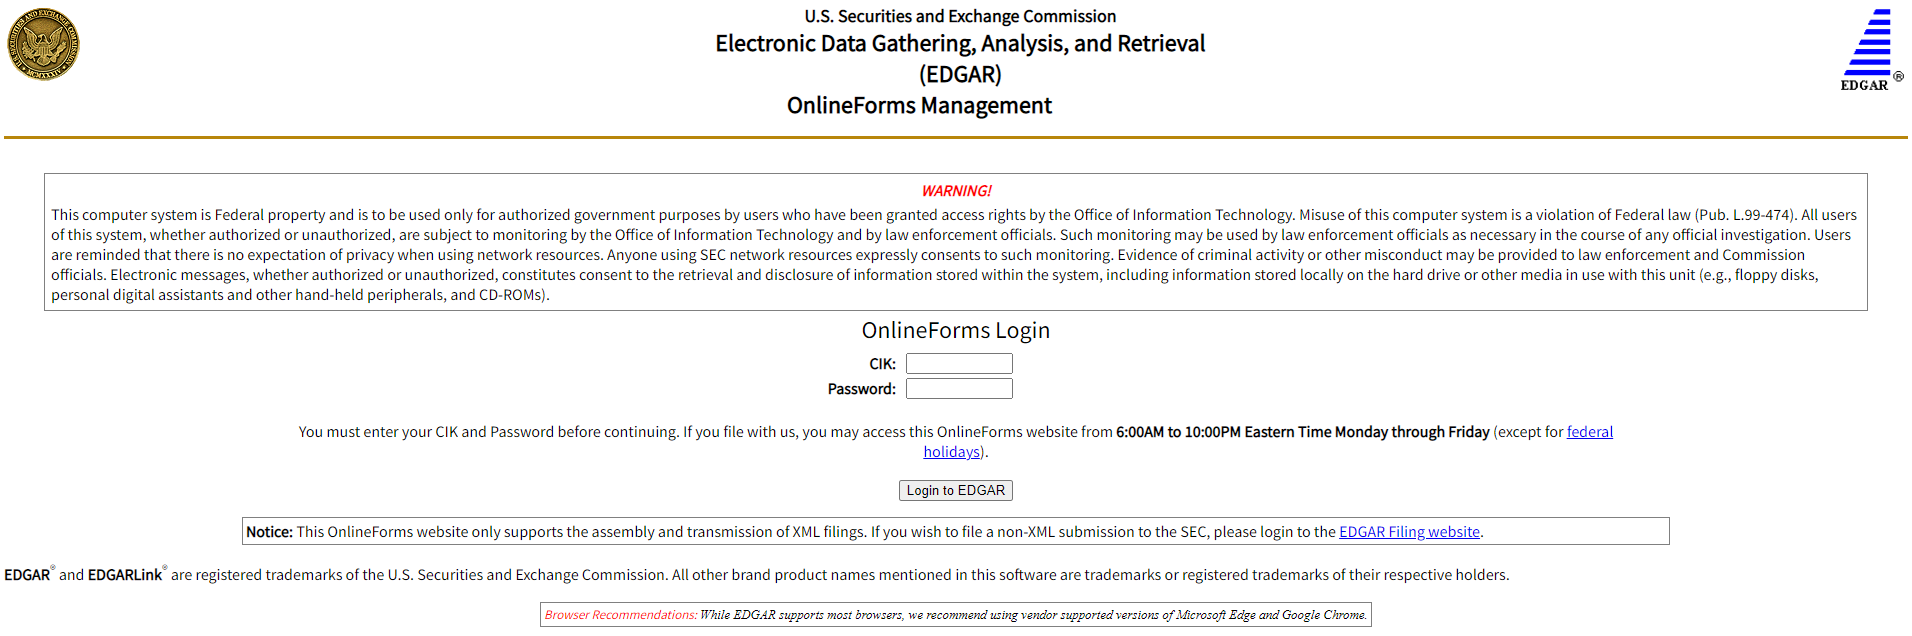 screenshot of EDGAR Online Forms Management